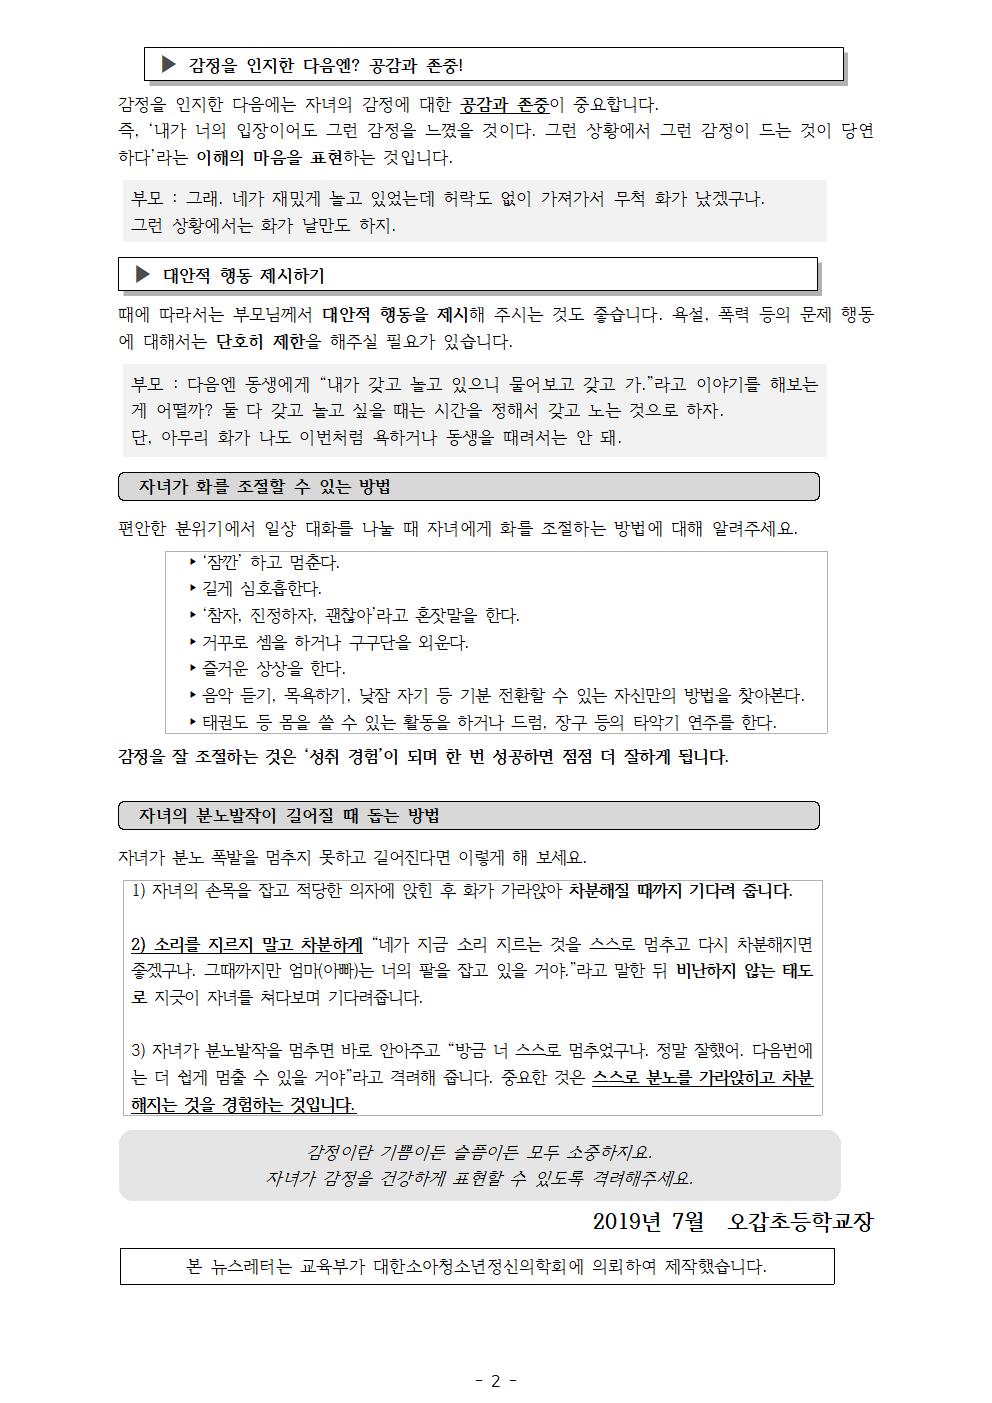 뉴스레터 5호(7월) 가정통신문002